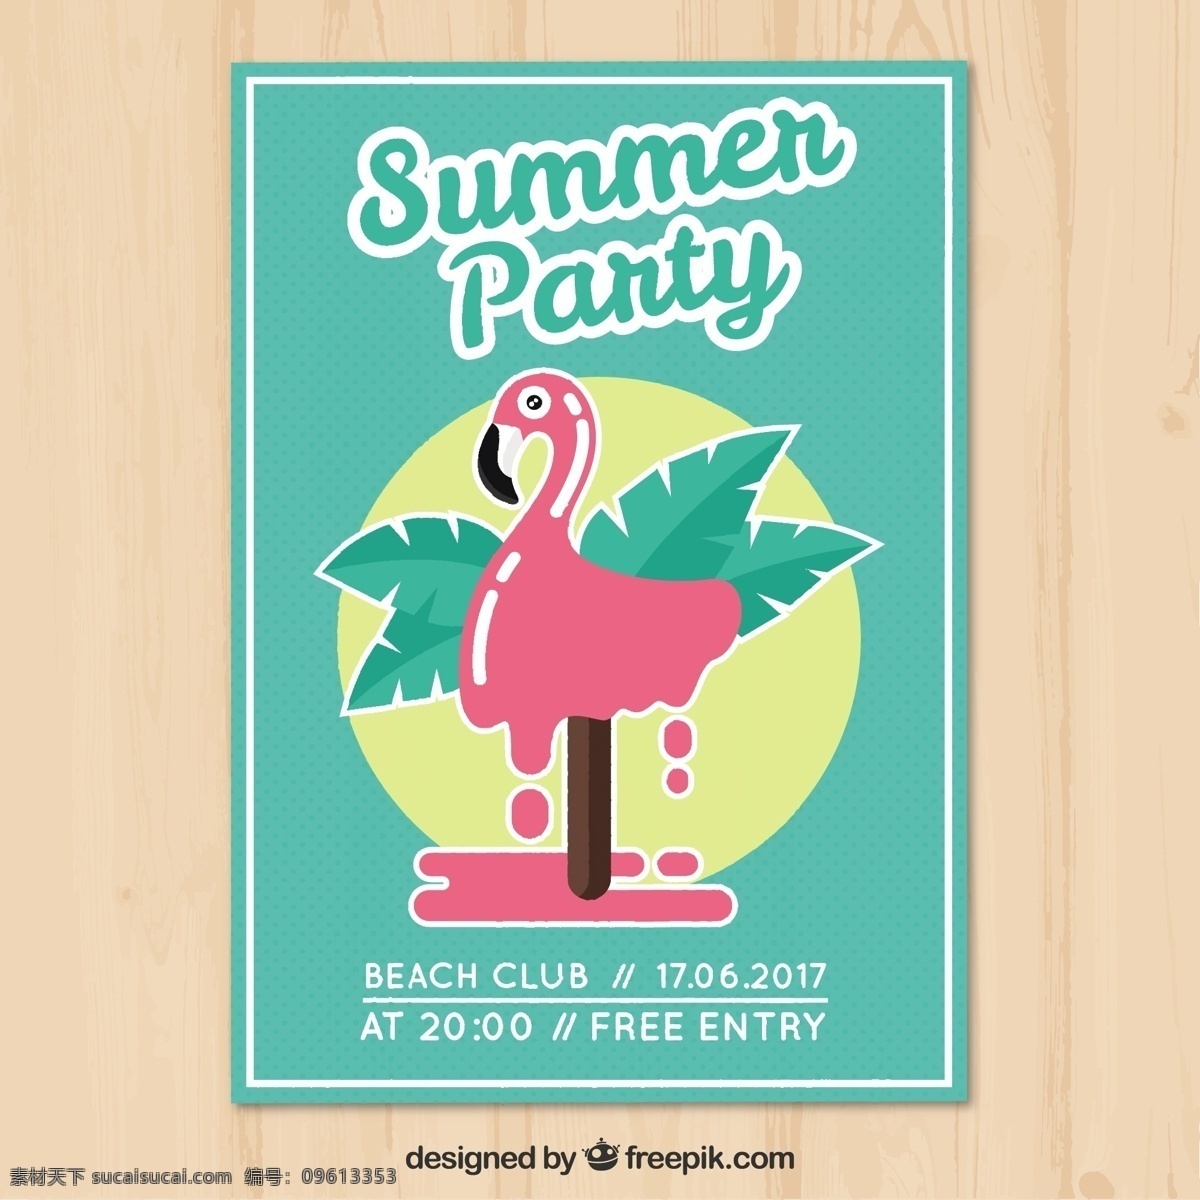 火烈鸟 冰淇淋 夏季 派对 传单 小册子 夏天 海滩 太阳 派对海报 假日 度假 夏季海滩 季节 季节性